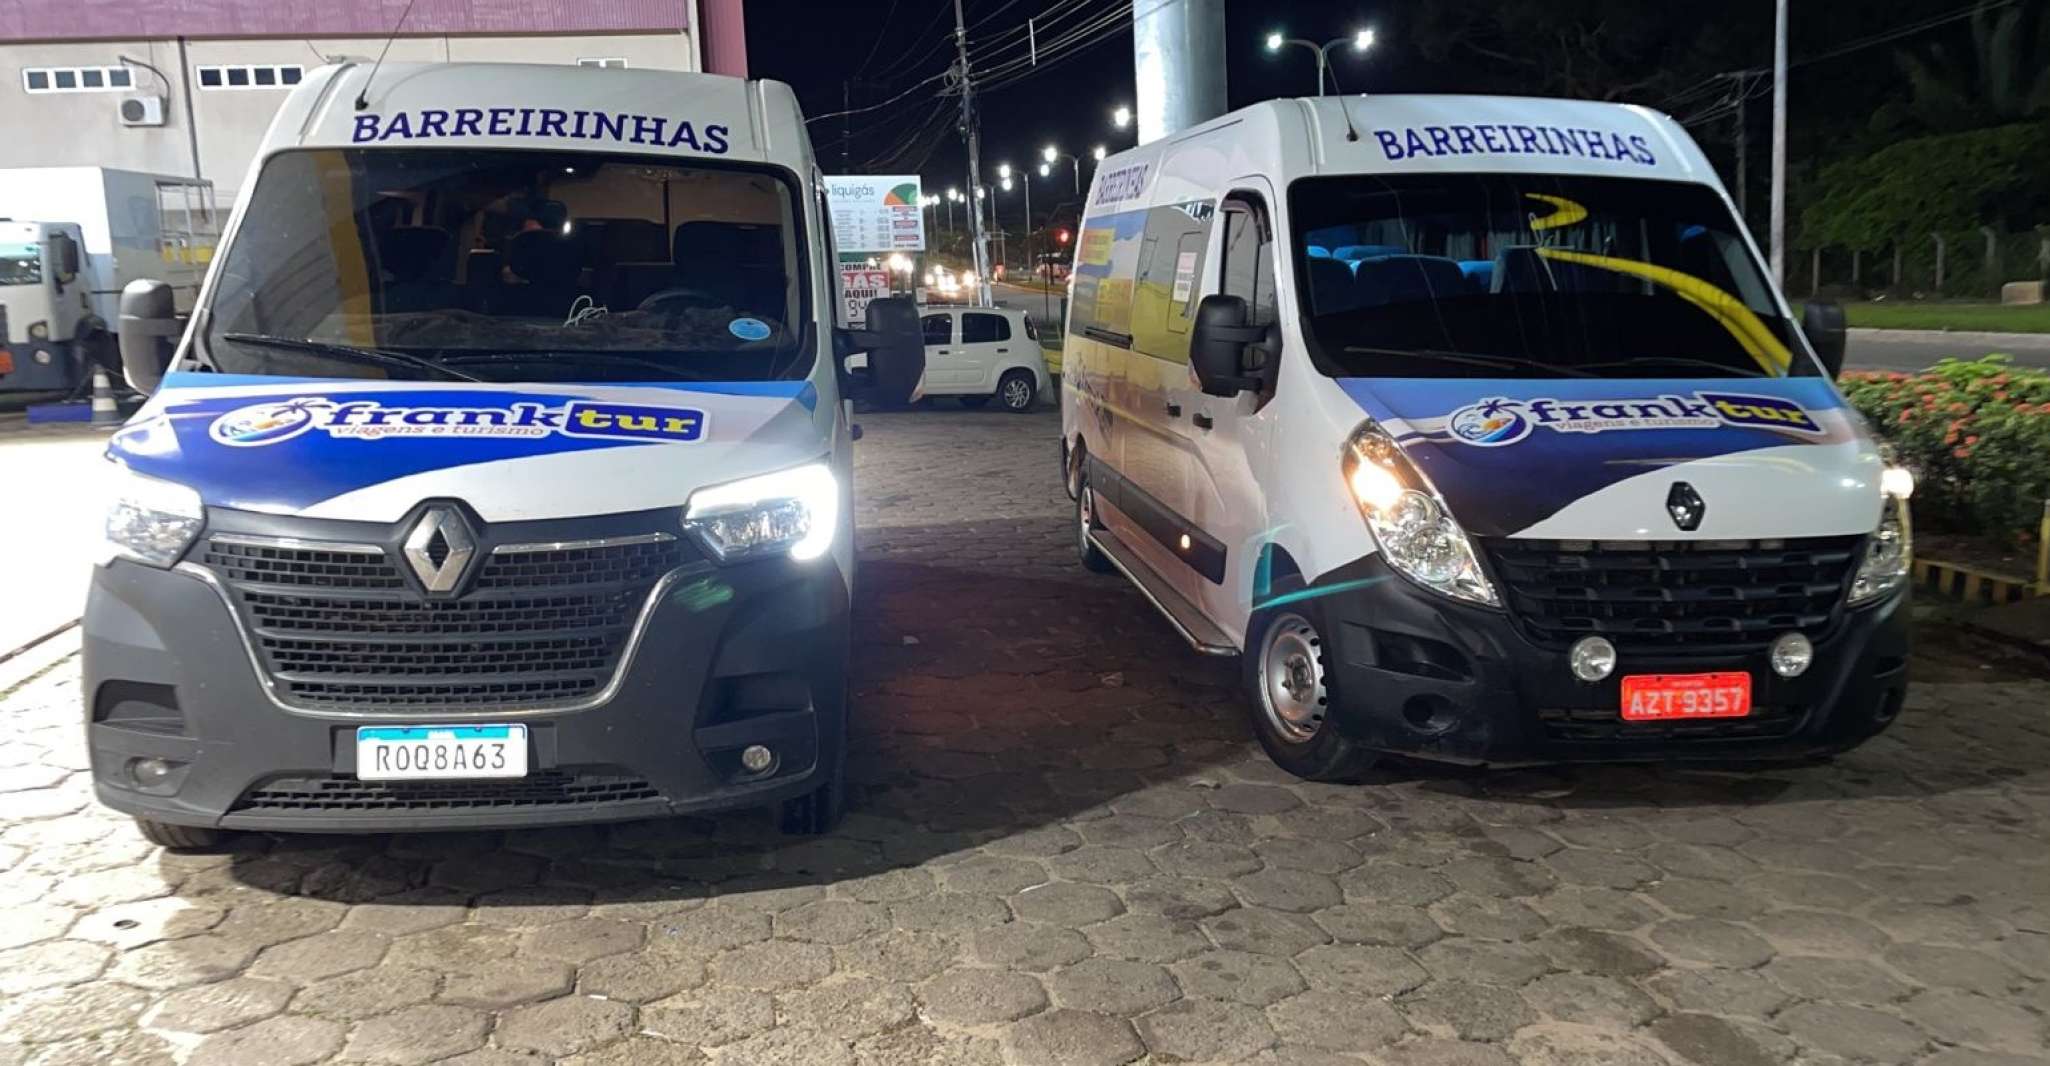 Transfer from Barreirinhas to São Luis - Housity